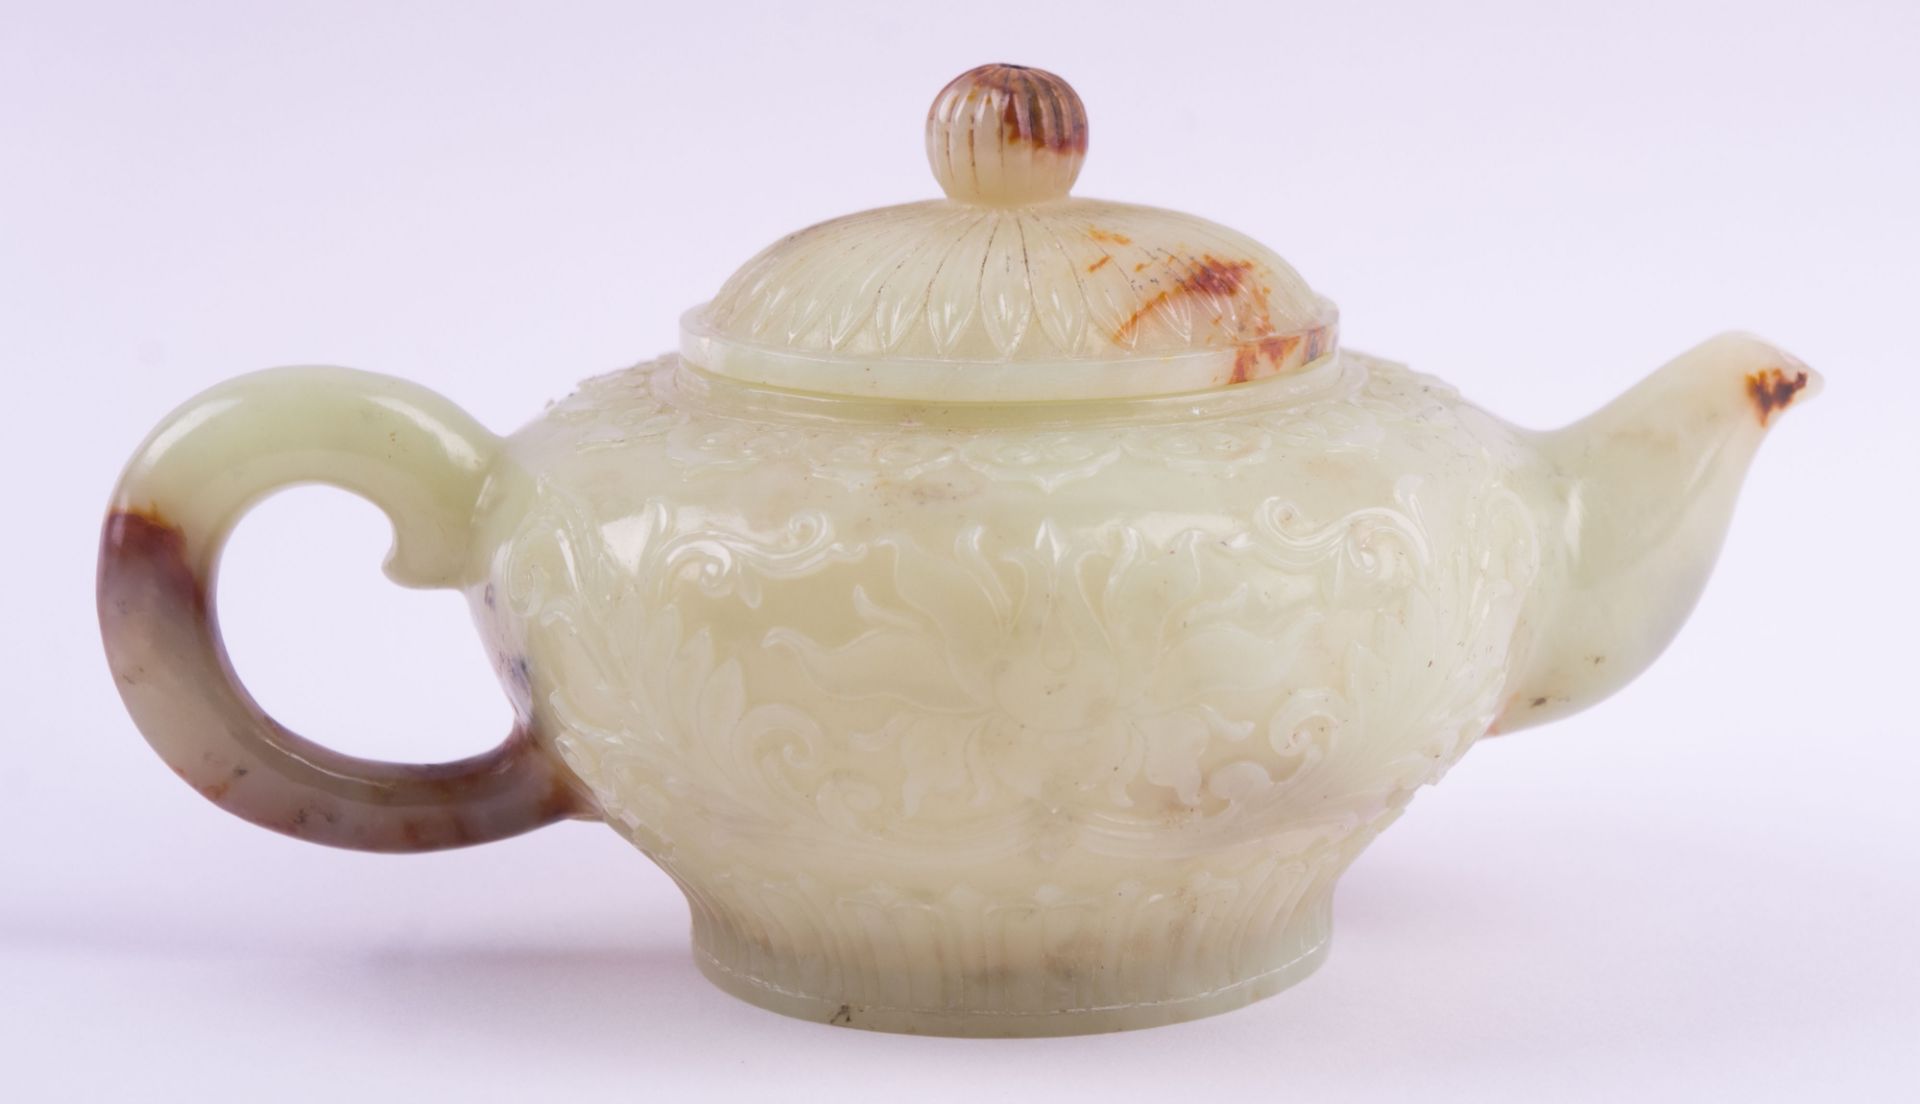 Kleine Jade-Teekanne China um 1900späte Qing Dynastie oder frühe Republikperiode, umlaufend sehr - Bild 2 aus 3